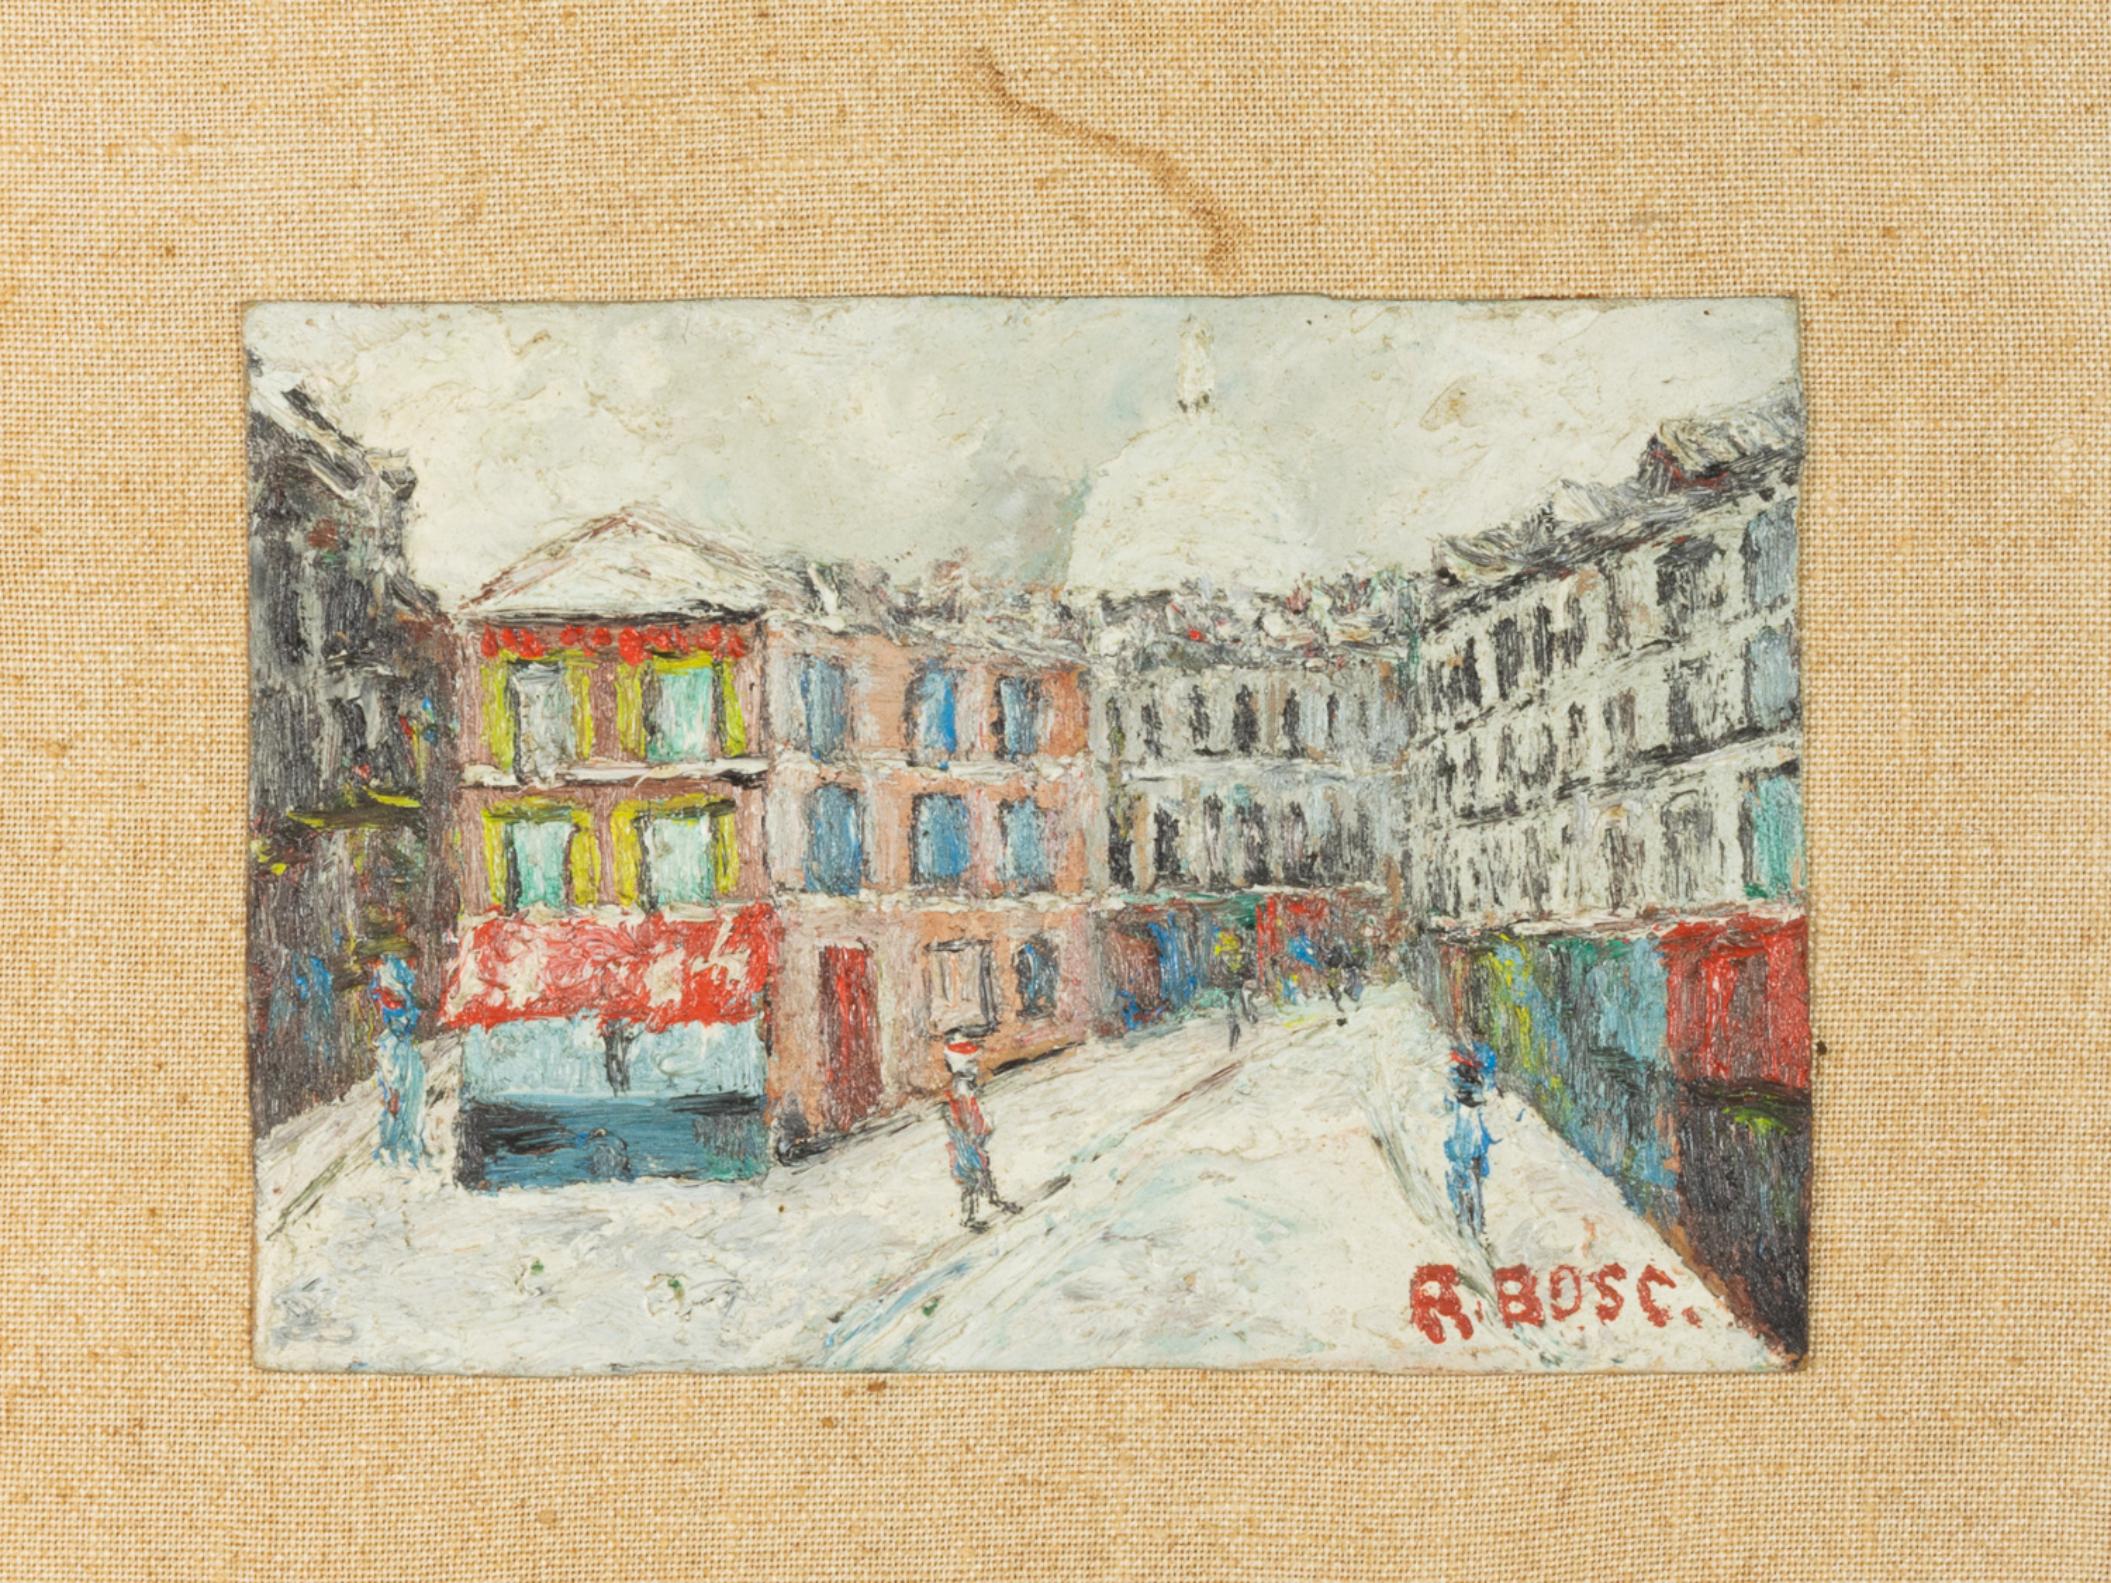 Peinture à l'huile du début du 20e siècle sur panneau composite représentant la saison hivernale dans les rues de Montmartre, à Paris, avec quelques personnages en mouvement.
